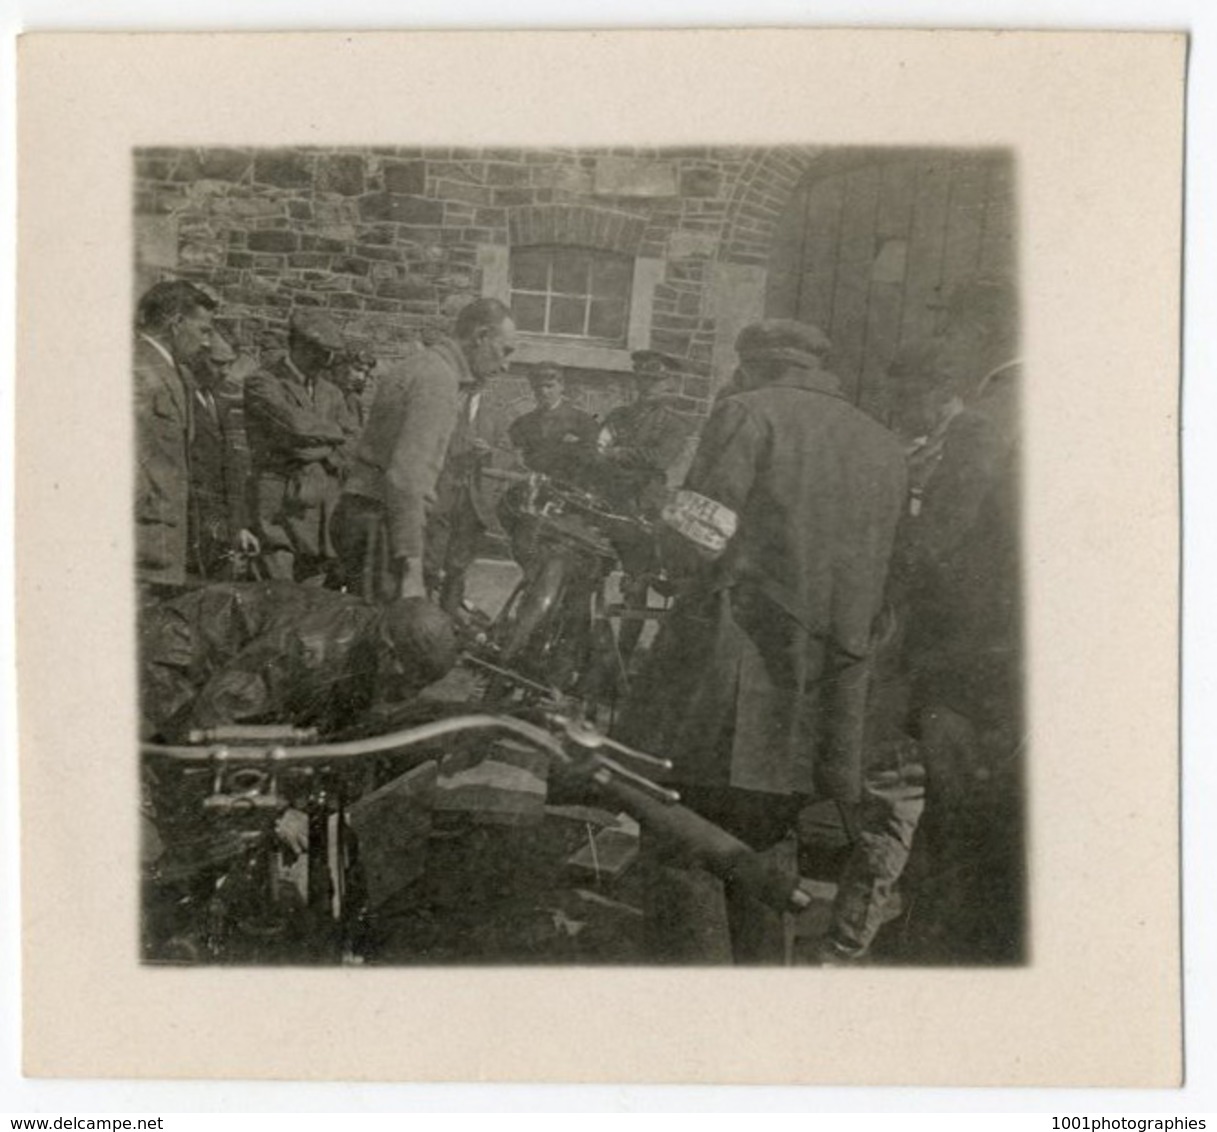 Mini-trip entre amis en voitures et motos, 1921. Ensemble de 34 photos originales d'époque.FG1247